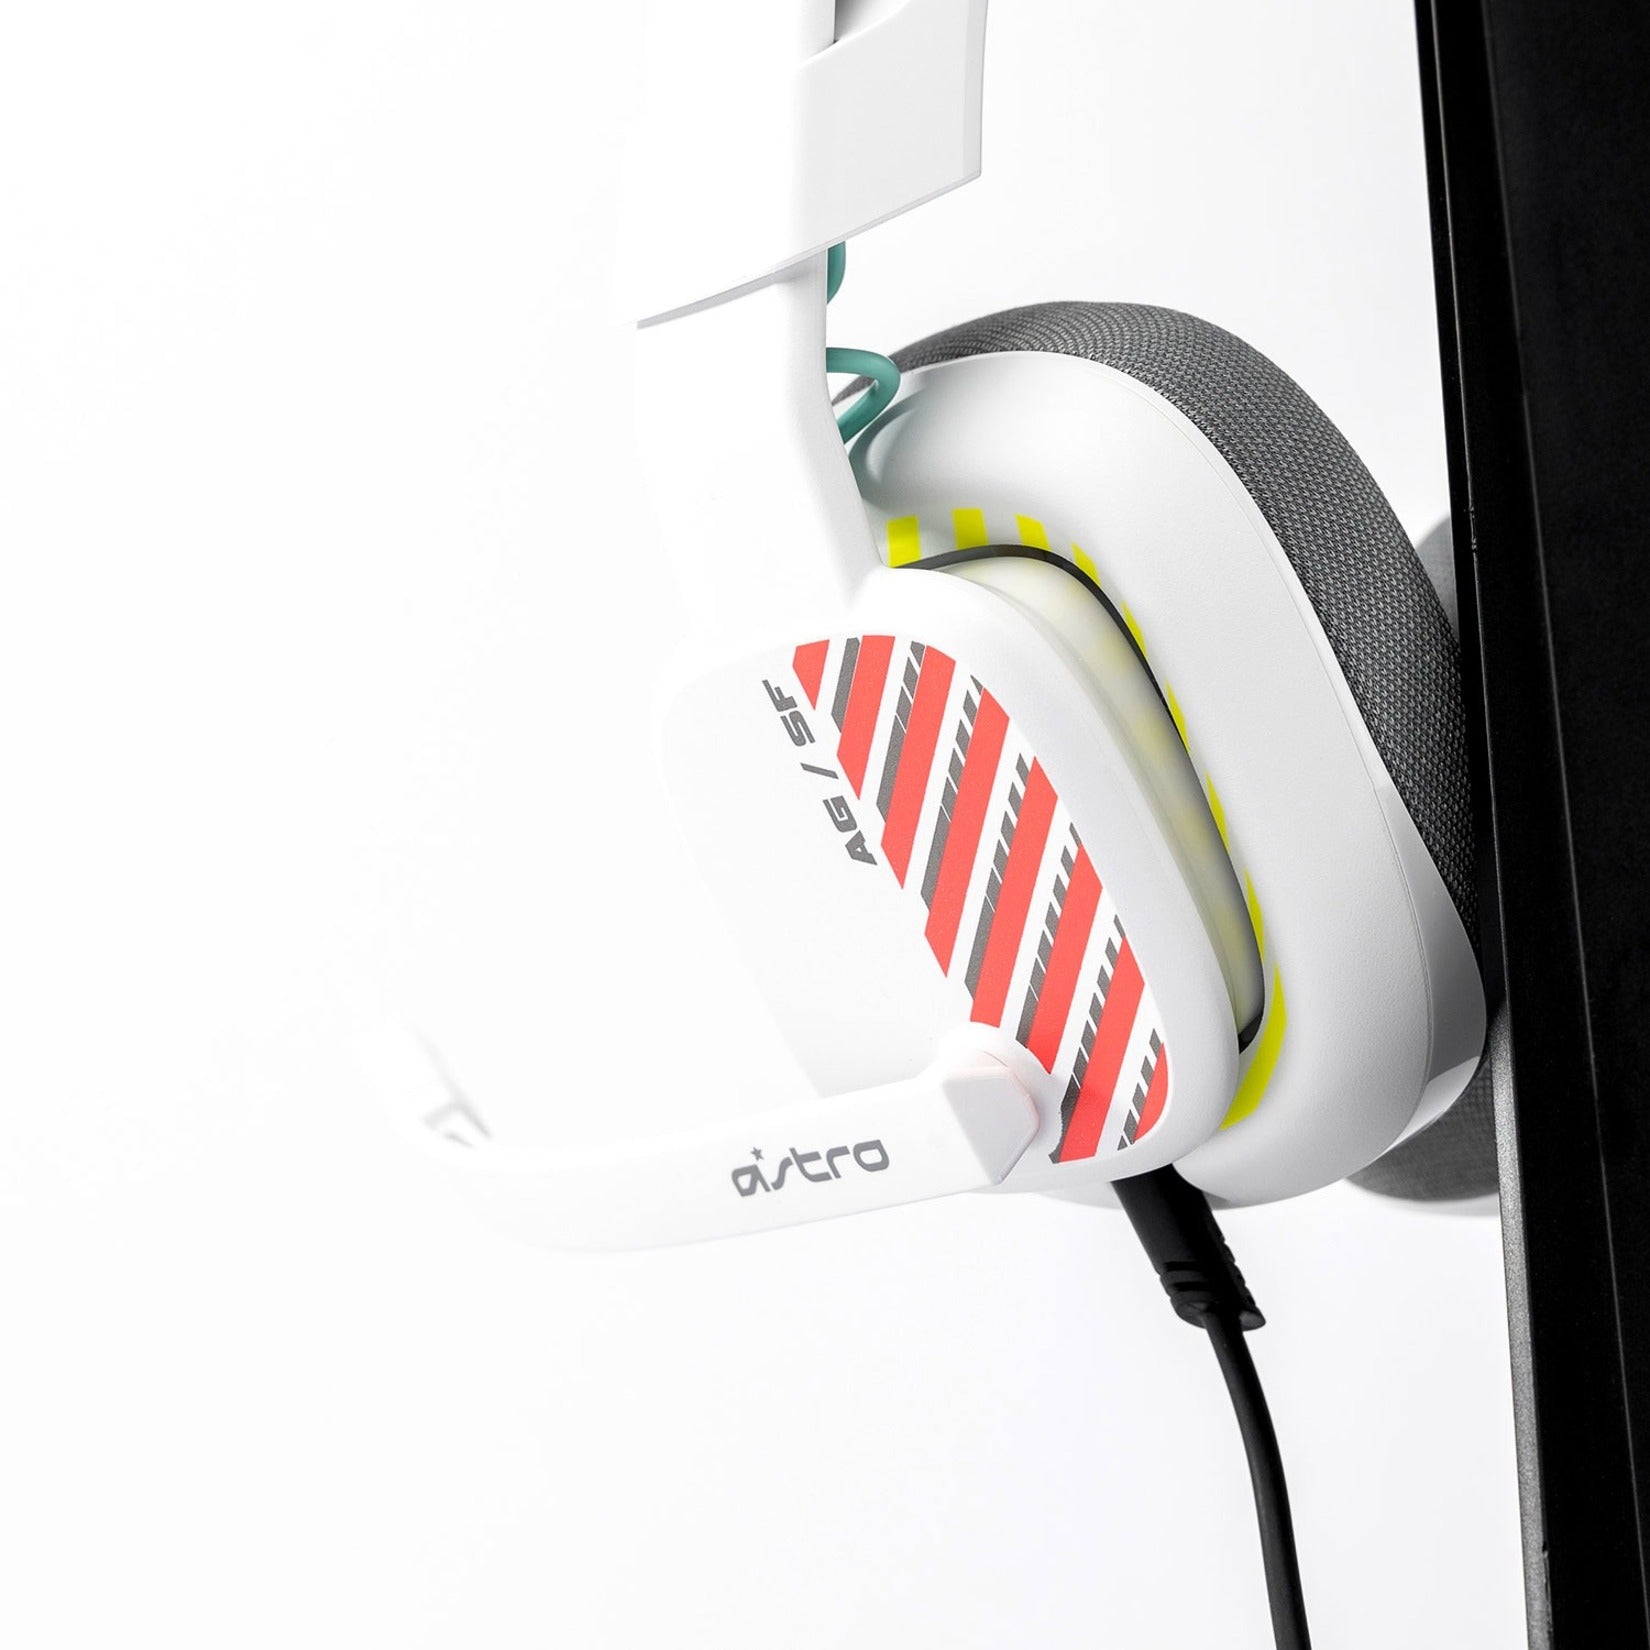 Astro 939-002062 A10 Headset Playstation - Weiß 2 Jahre Garantie Uni-direktionales Mikrofon